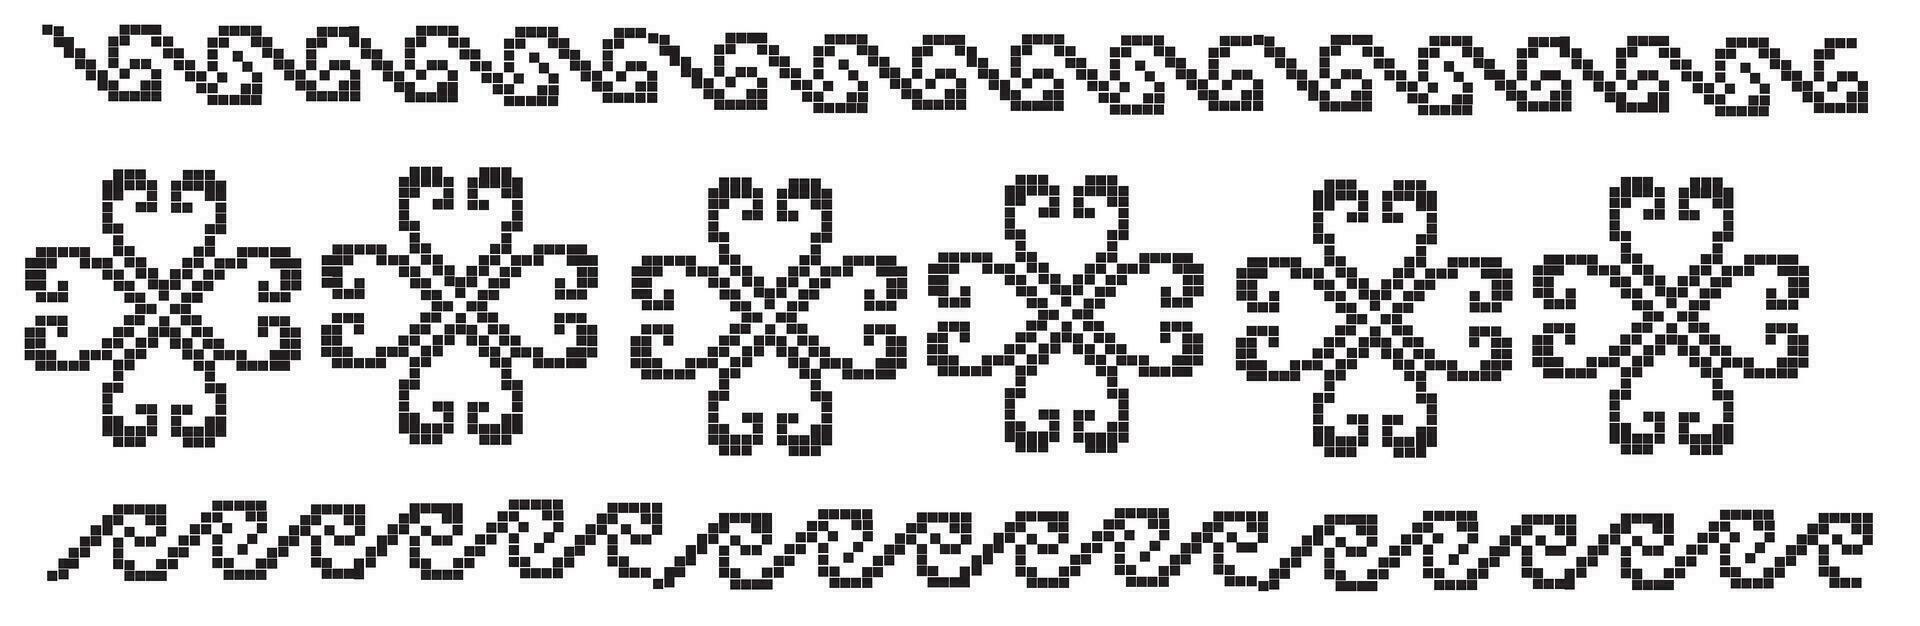 små prickar och kvadrater vektor mönster illustration i svart och whitea